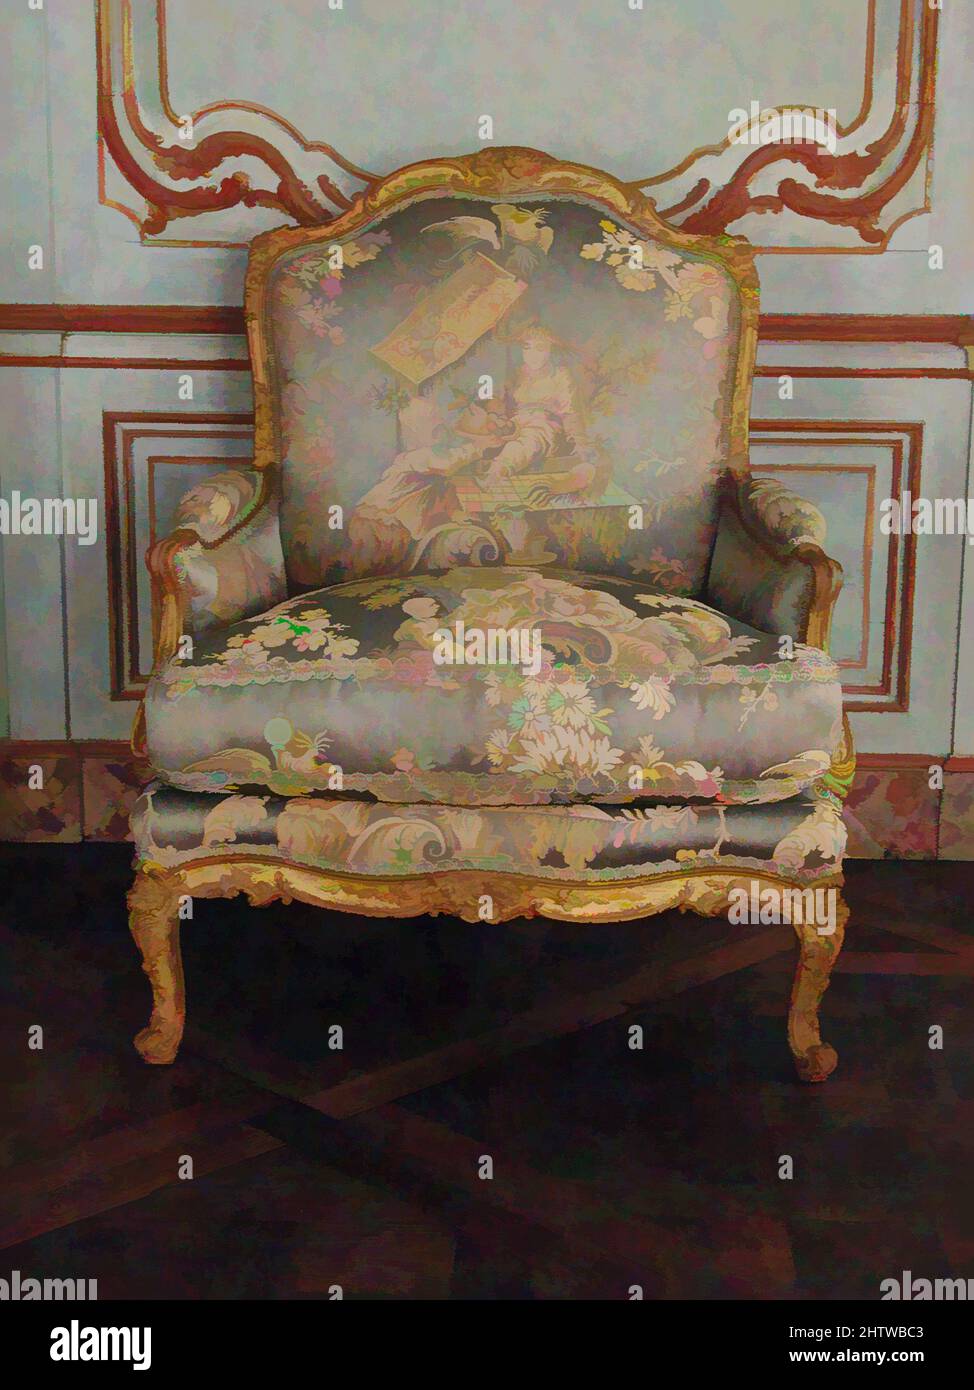 Kunst inspiriert von Armlehnstuhl (Bergère) (einer von einem Paar), ca. 1765, Französisch, Paris, geschnitztes und vergoldetes Buchenholz, H. 39-7/8 x B 32 x T 23-1/2 Zoll (101,3 x 81,3 x 59,7 cm), Holzmöbel, Diese Art von Sessel, zwischen den Armen und dem Sitz gepolstert, wird als Bergère bezeichnet. Es war, Classic Works modernisiert von Artotop mit einem Schuss Moderne. Formen, Farbe und Wert, auffällige visuelle Wirkung auf Kunst. Emotionen durch Freiheit von Kunstwerken auf zeitgemäße Weise. Eine zeitlose Botschaft, die eine wild kreative neue Richtung verfolgt. Künstler, die sich dem digitalen Medium zuwenden und die Artotop NFT erschaffen Stockfoto